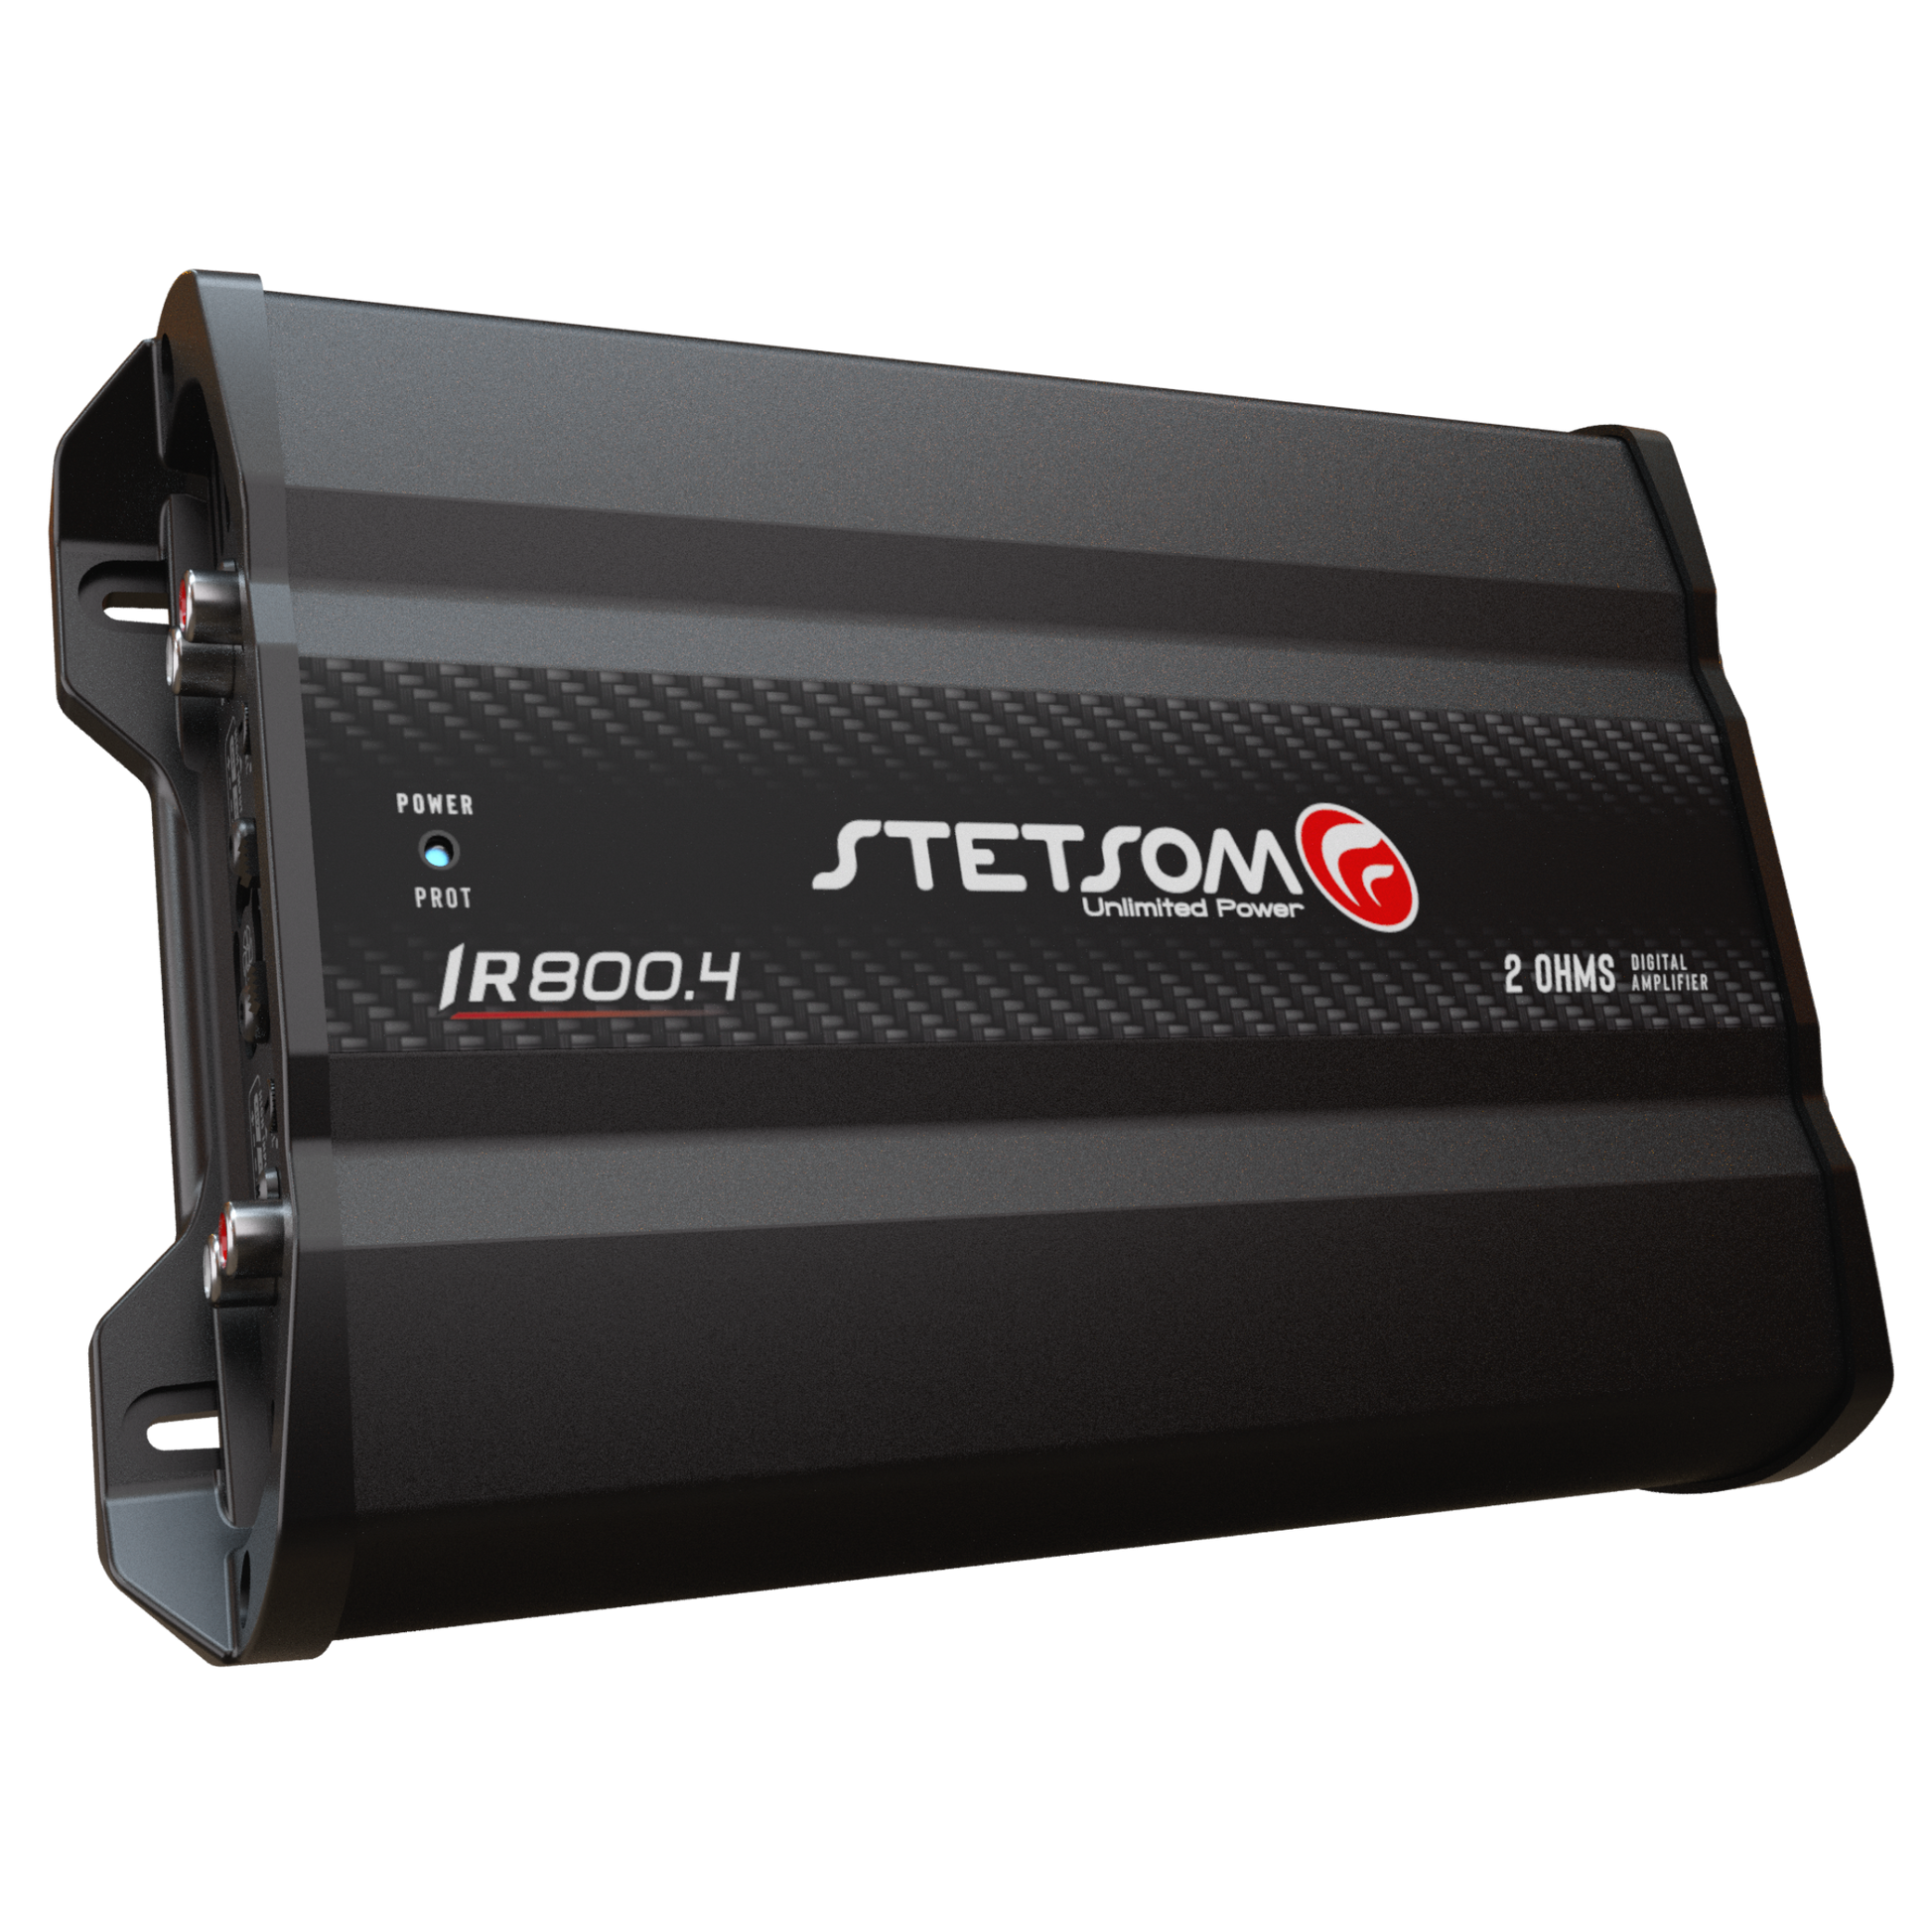 Stetsom IR 800.4 Compact Digital Multi Channel Amplifier 4 Channels 800 W Full Range